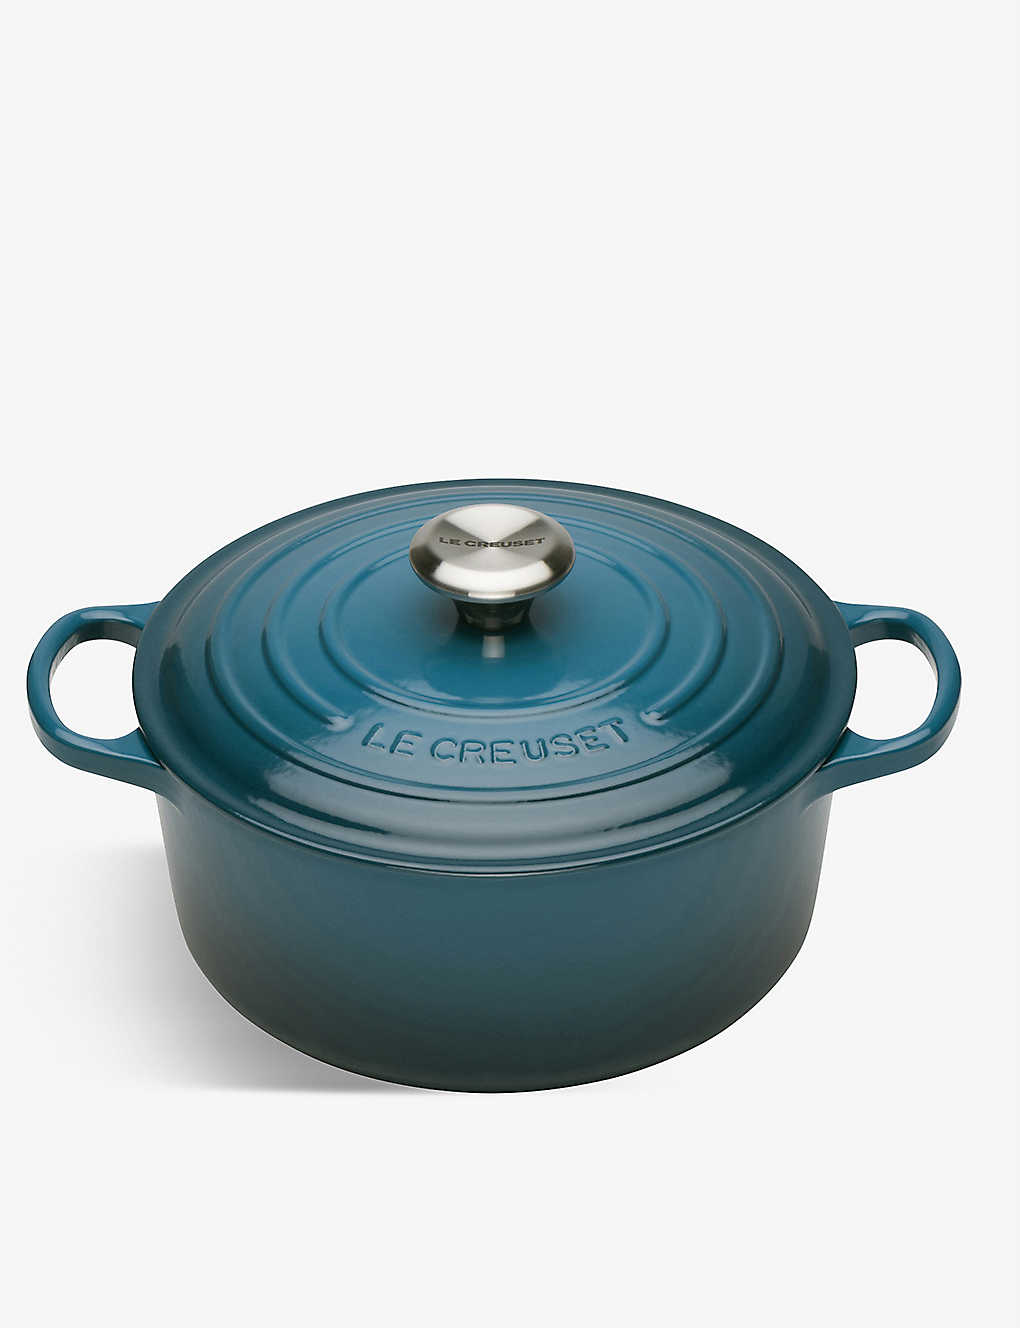 LE CREUSET Signature cast iron casserole dish 24cm 